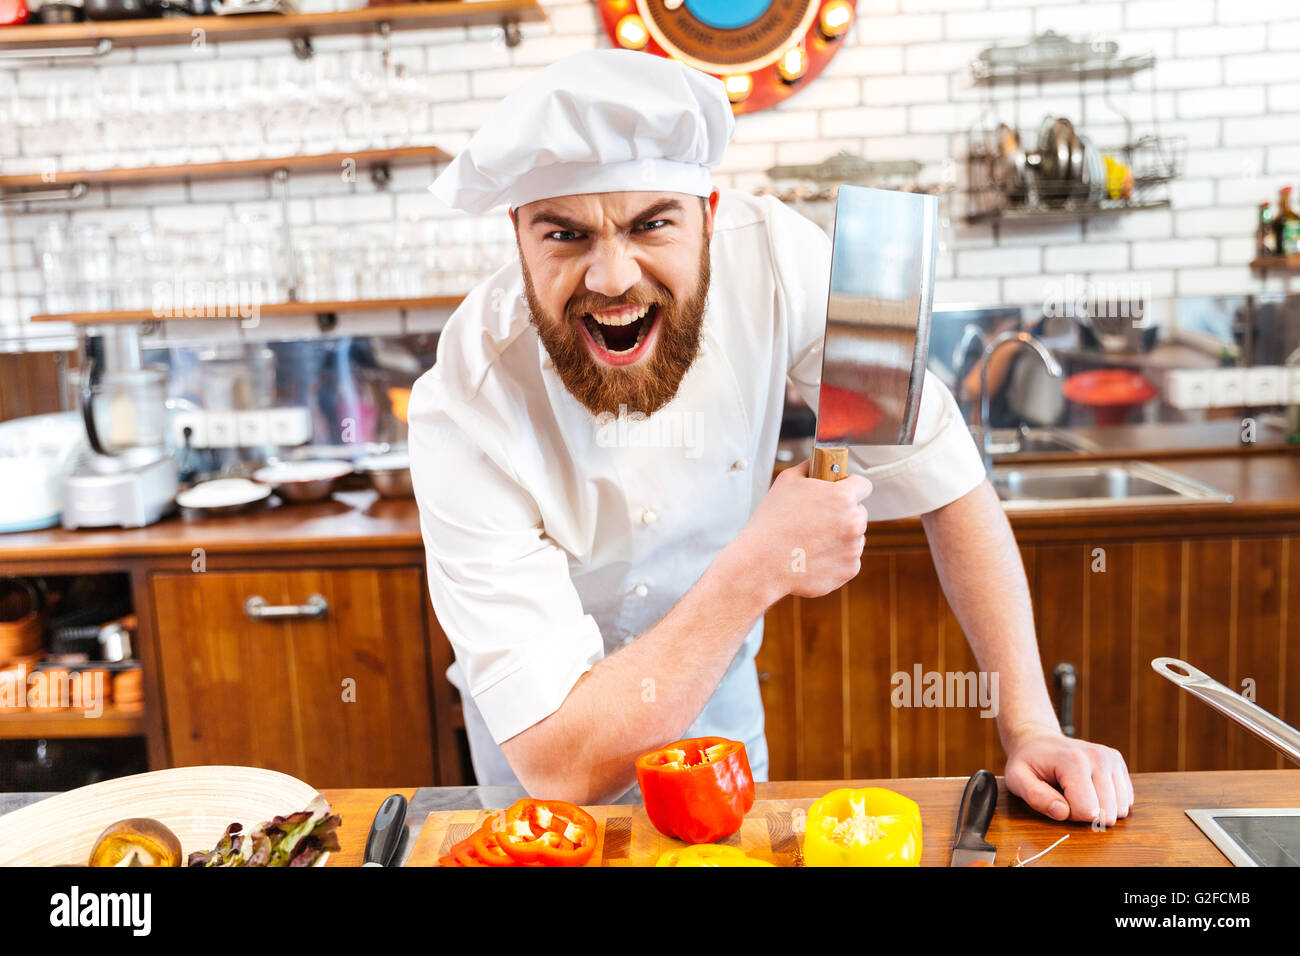 Wütend bärtigen Chef-Koch hält Fleisch Cleaver Messer und schreiend auf die  Küche Stockfotografie - Alamy